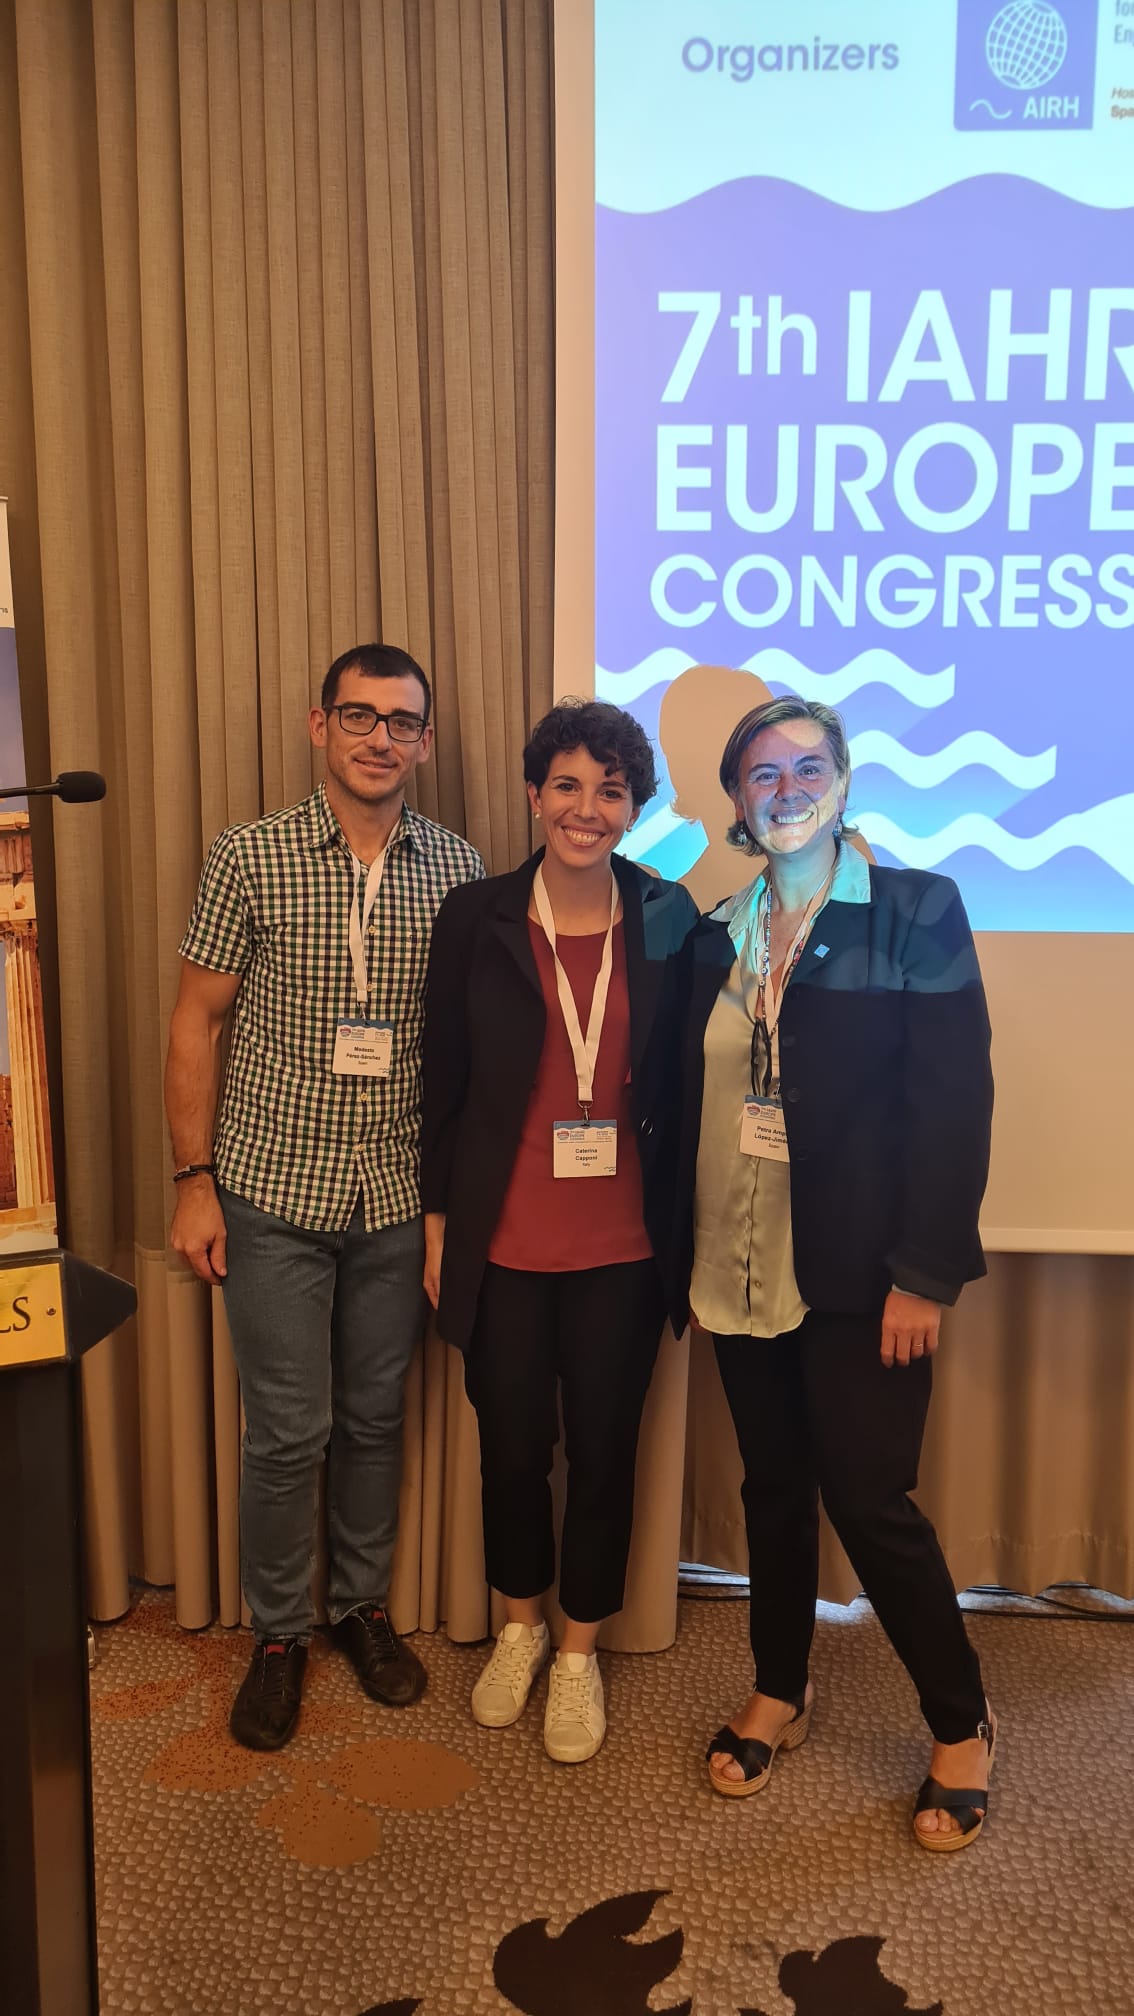 Participación en el 7th IAHR Europe Congress